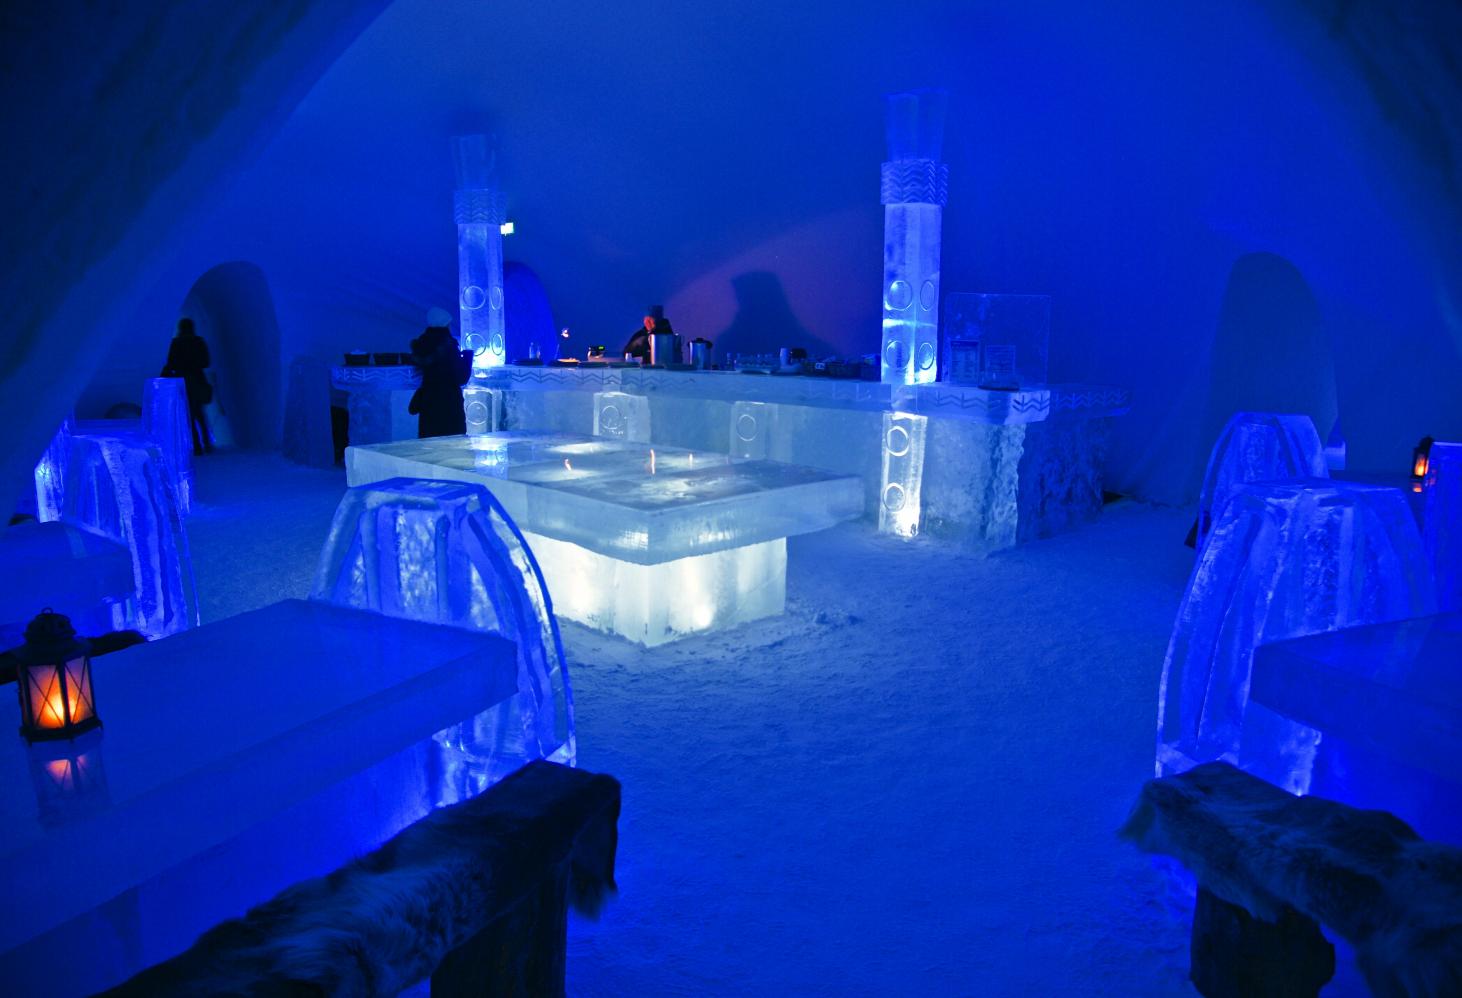 Hôtel de Glace — ледяной отель в Квебеке, Канада